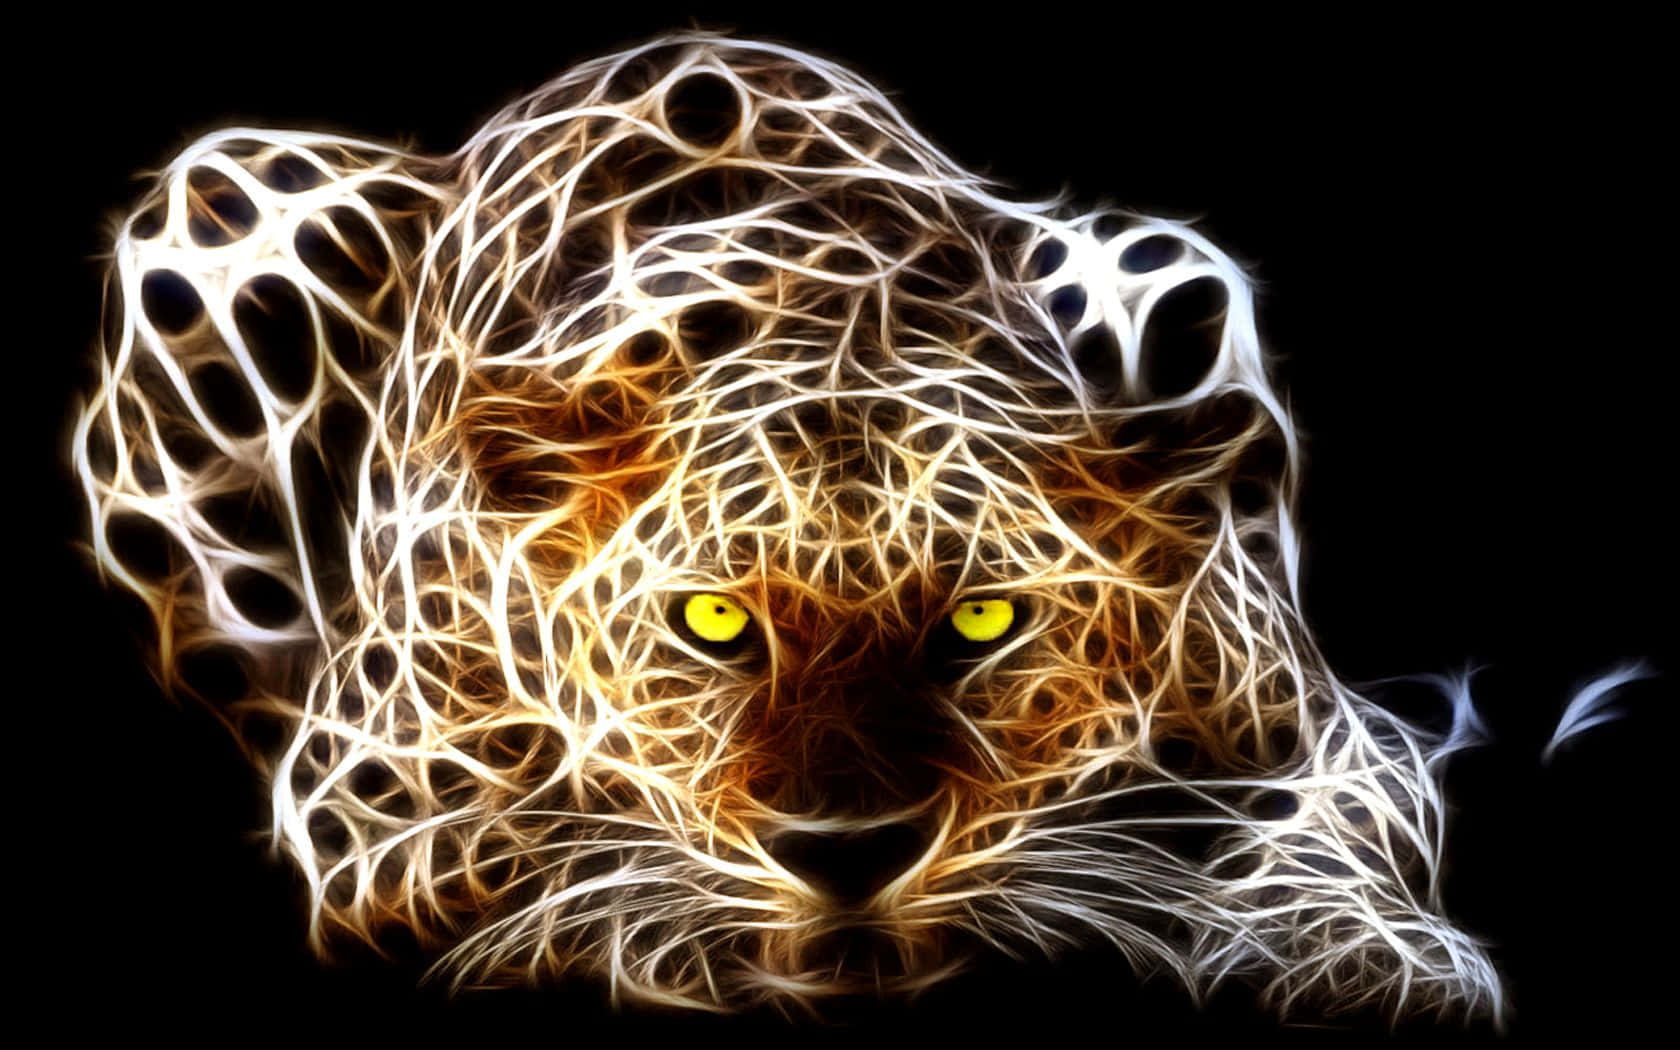 A fierce cheetah in their natural habitat.